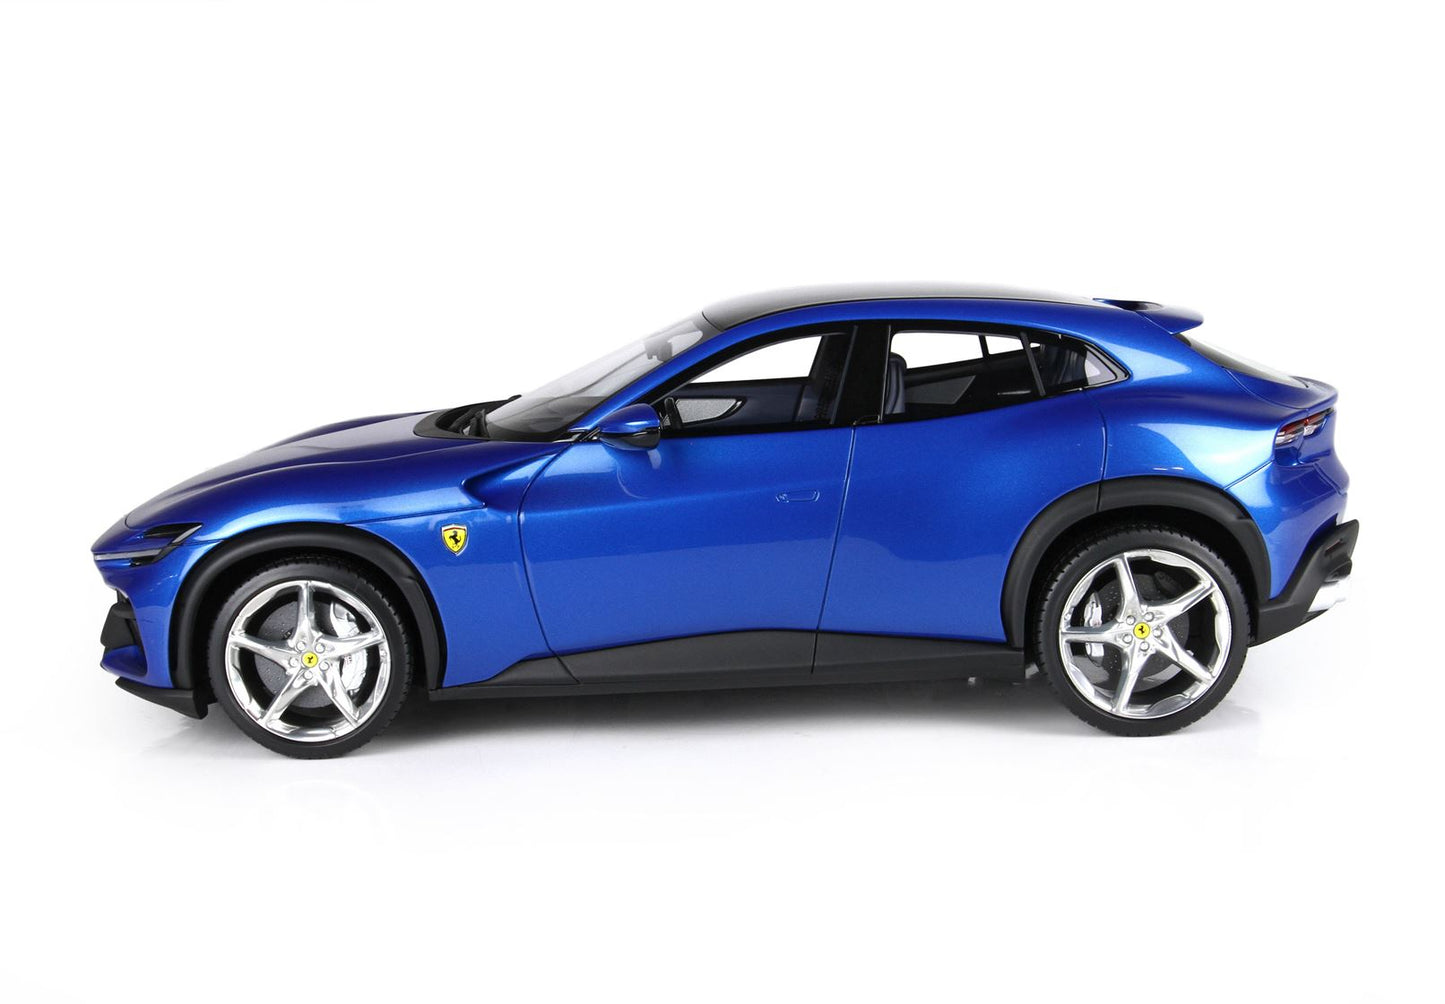 BBR-MODELS - 1/18 - Ferrari Purosangue Blu Corsa con Vetrinetta